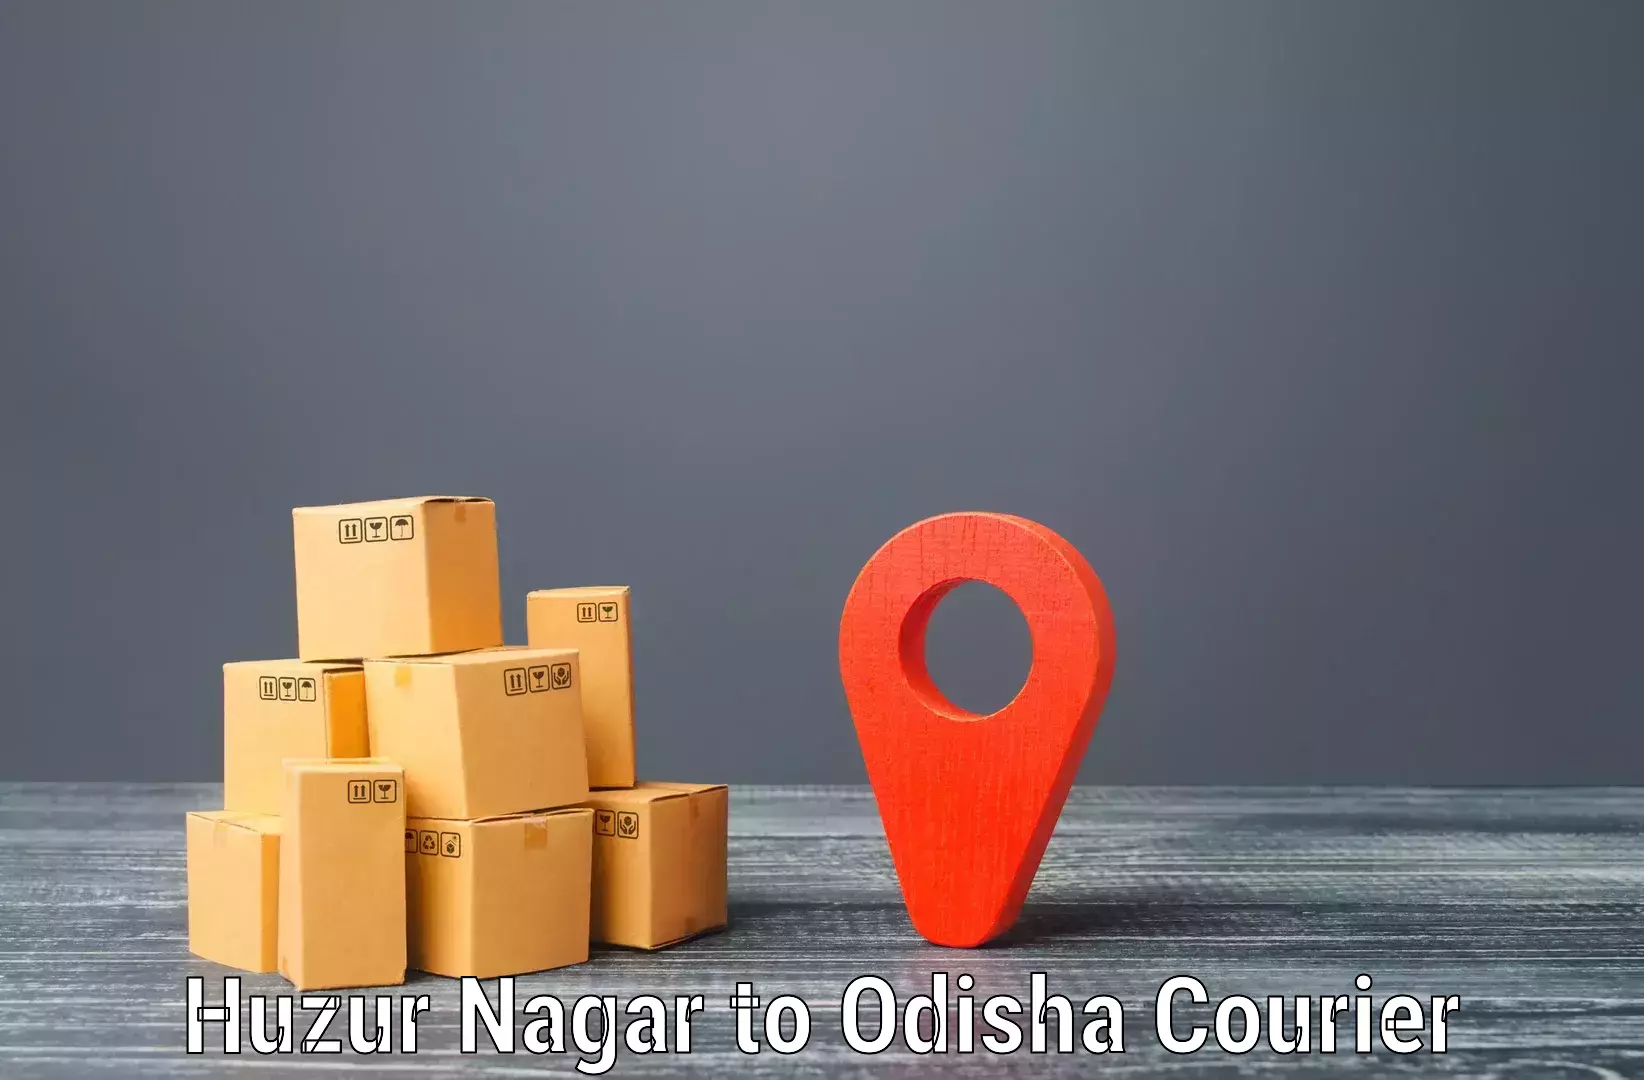 On-demand courier Huzur Nagar to Bhuban